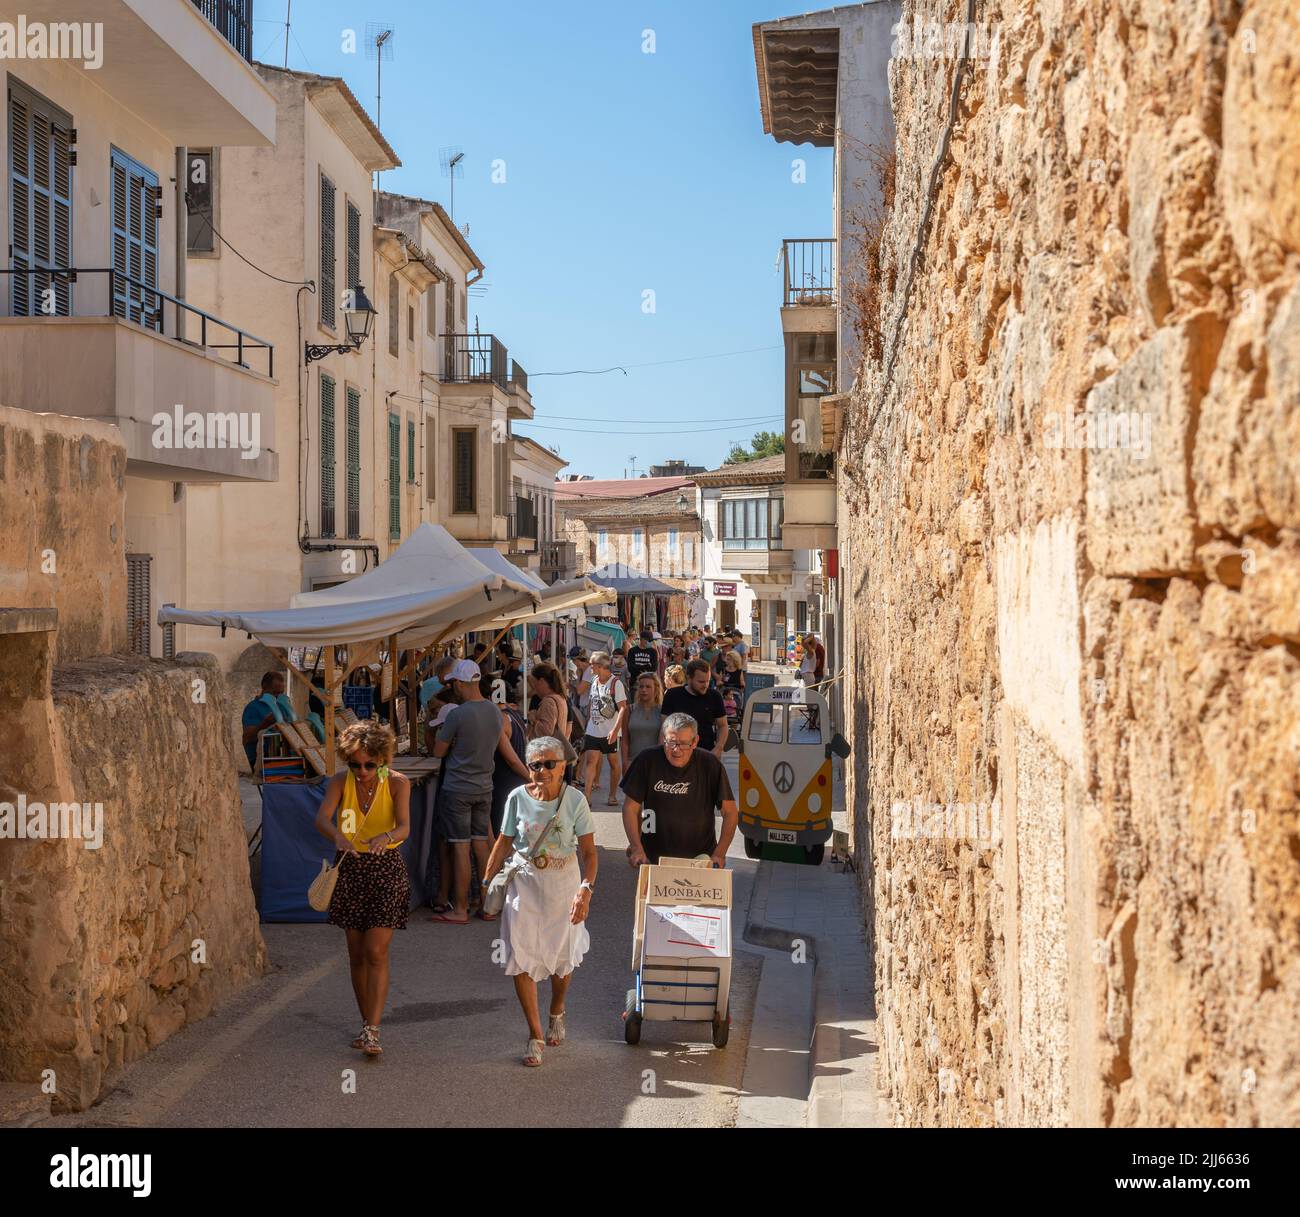 Santanyi, Spagna; luglio 09 2022: Mercato settimanale di strada nella città di Majorcan di Santanyi, Spagna. Bancarelle che vendono abiti e moda con i turisti strollin Foto Stock